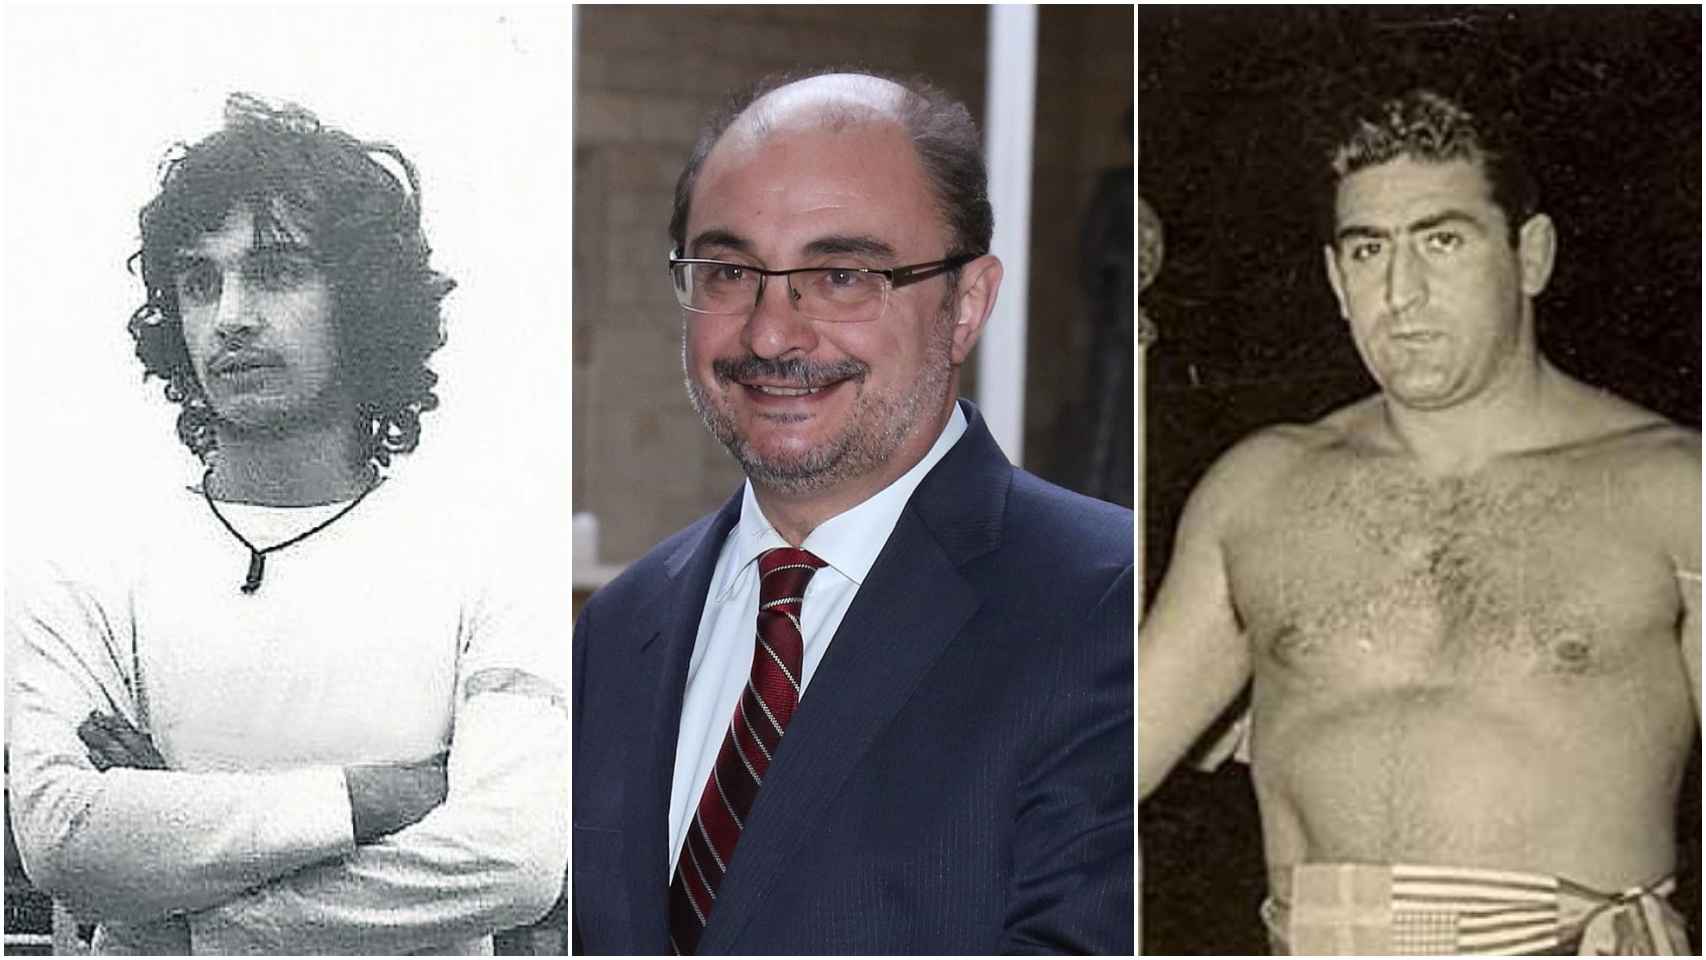 Javier Lambán, de izquierda a derecha: de futbolista, de político y su tío luchador.